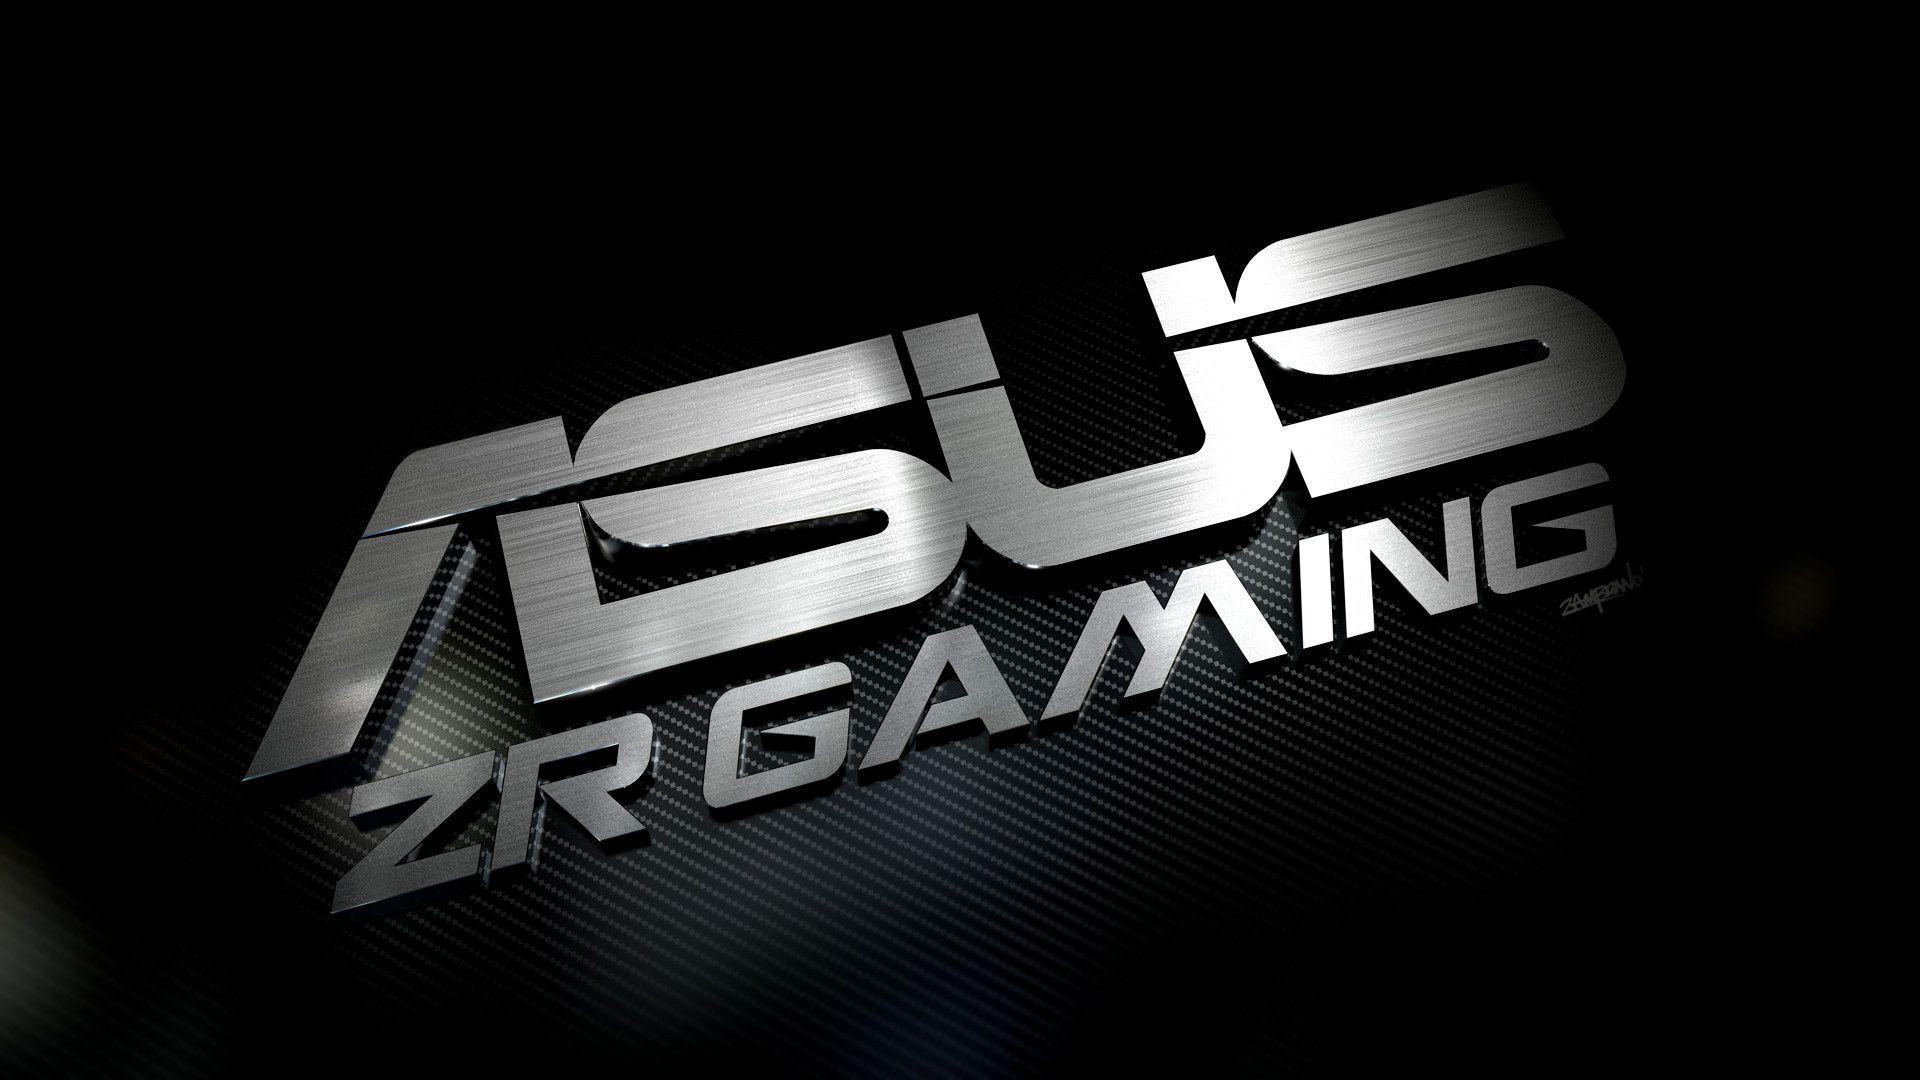 Download Asus Zr Gaming Wallpaper. Full HD Wallpaper